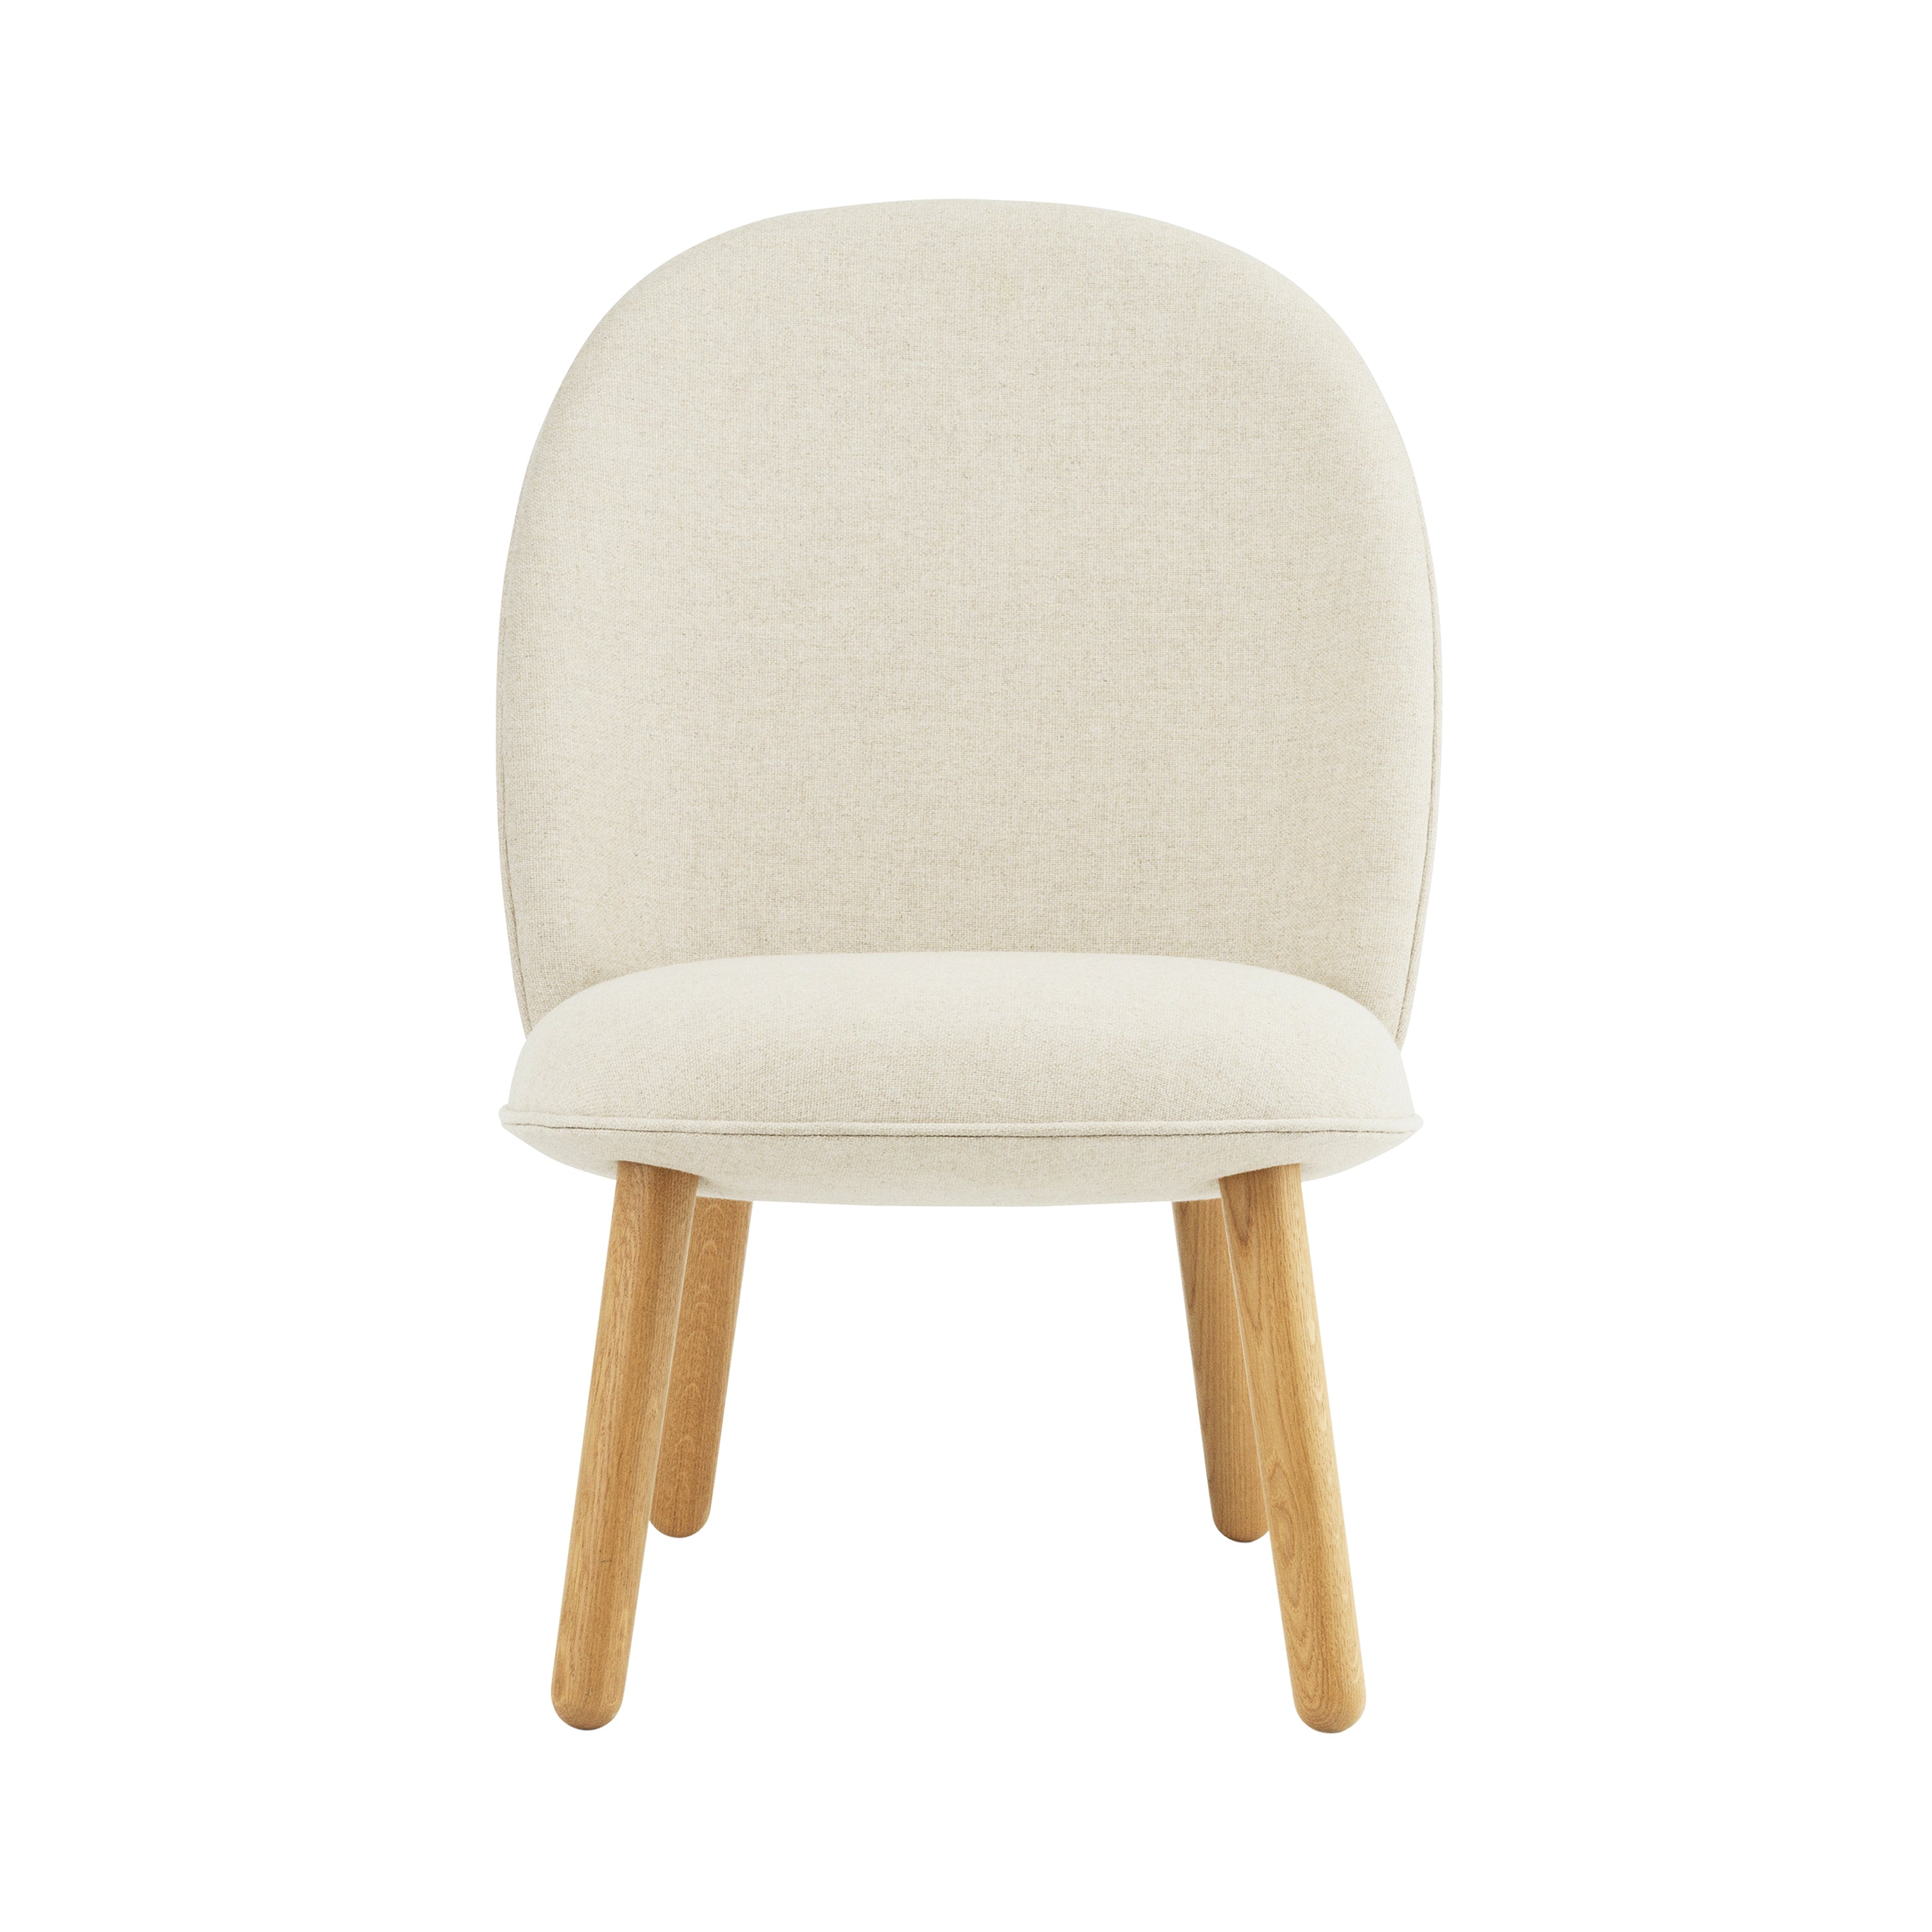 Ace Lounge Chair: Oak